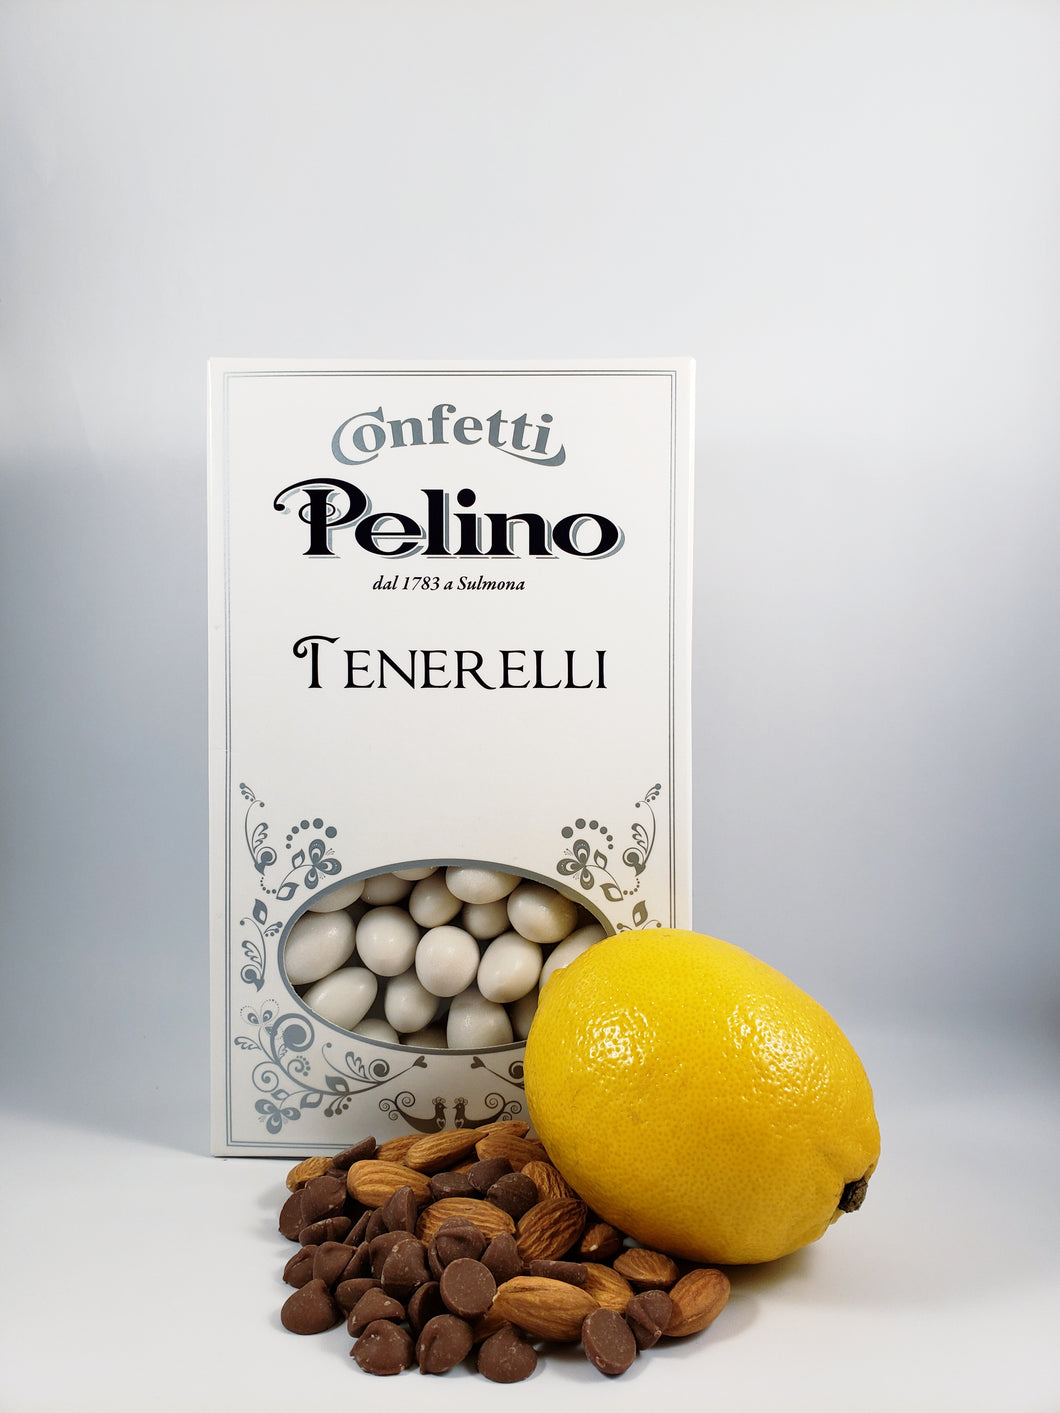 Confetti Tenerelli White Chocolate Almond - Lemon Flavored - 500 g